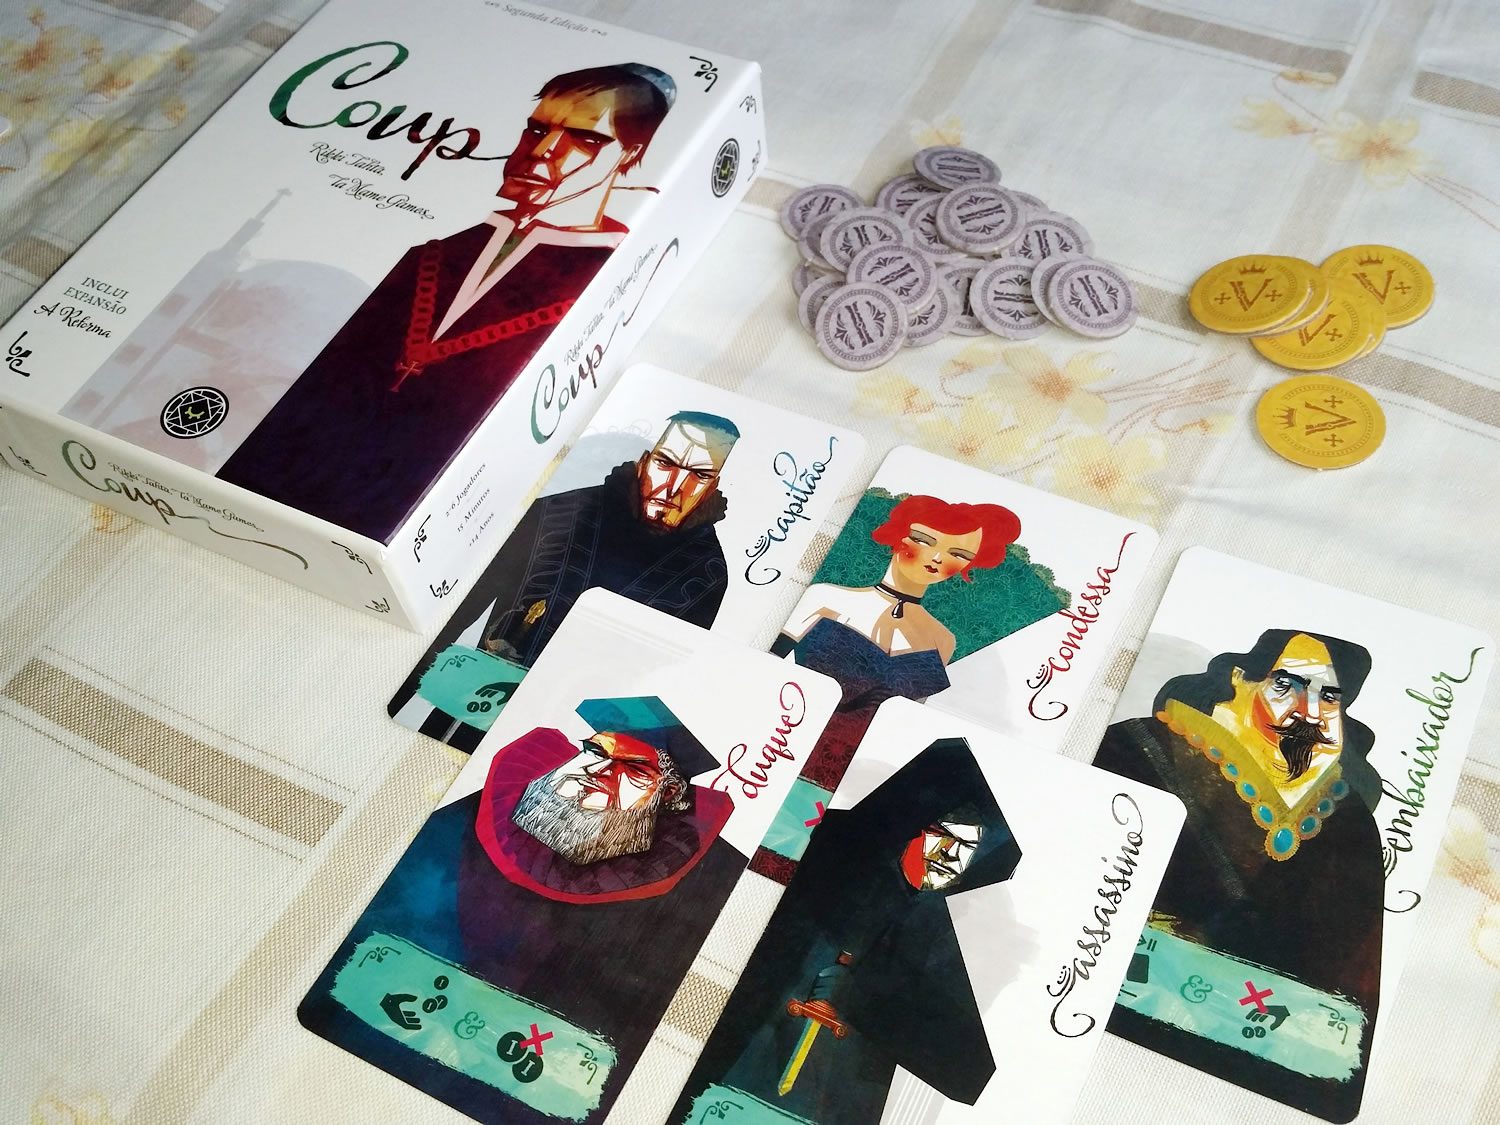 Coup, uma treta em forma de jogo de cartas